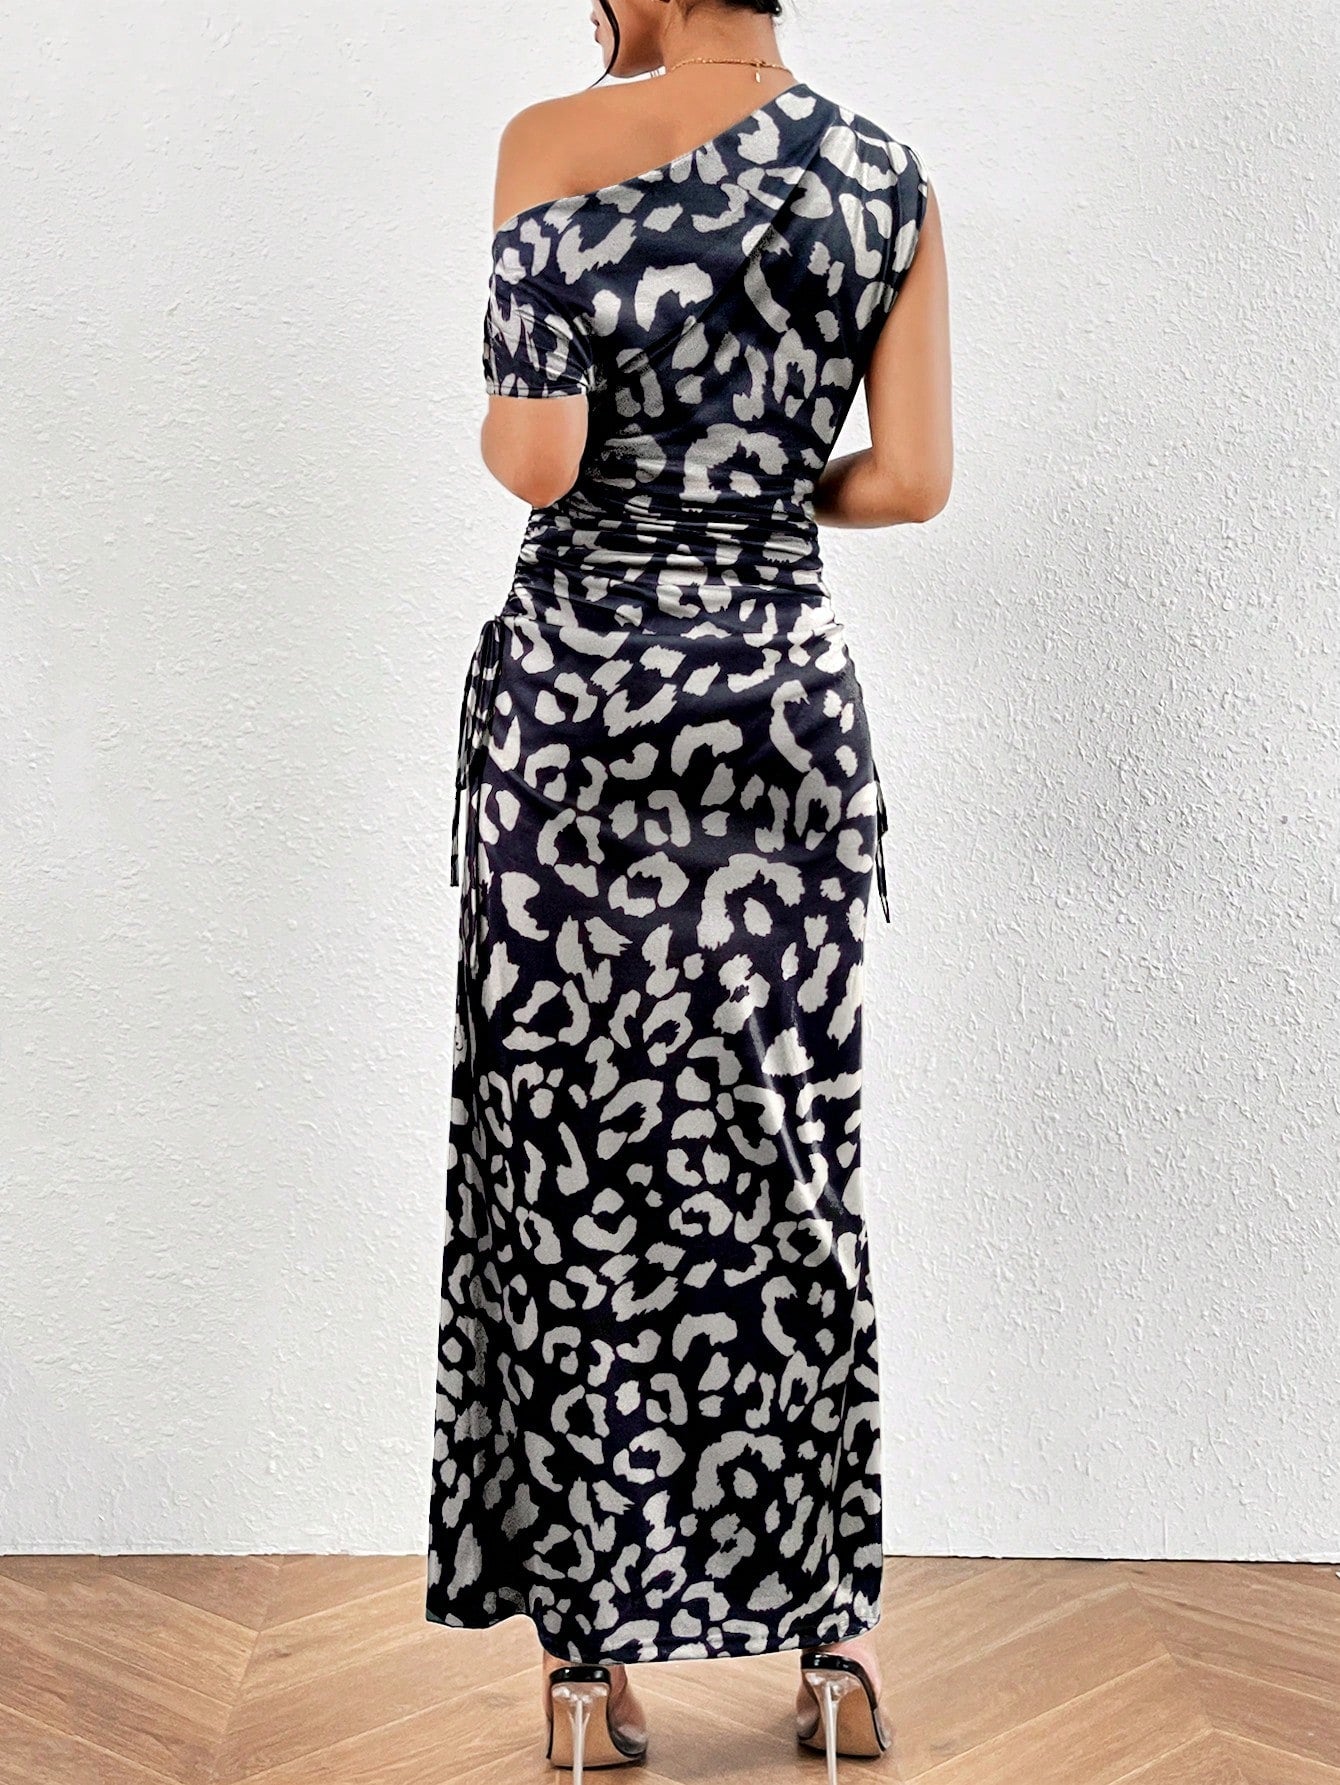 Privé Ladies' Slim Fit Asymmetrical Neckline Printed Dress